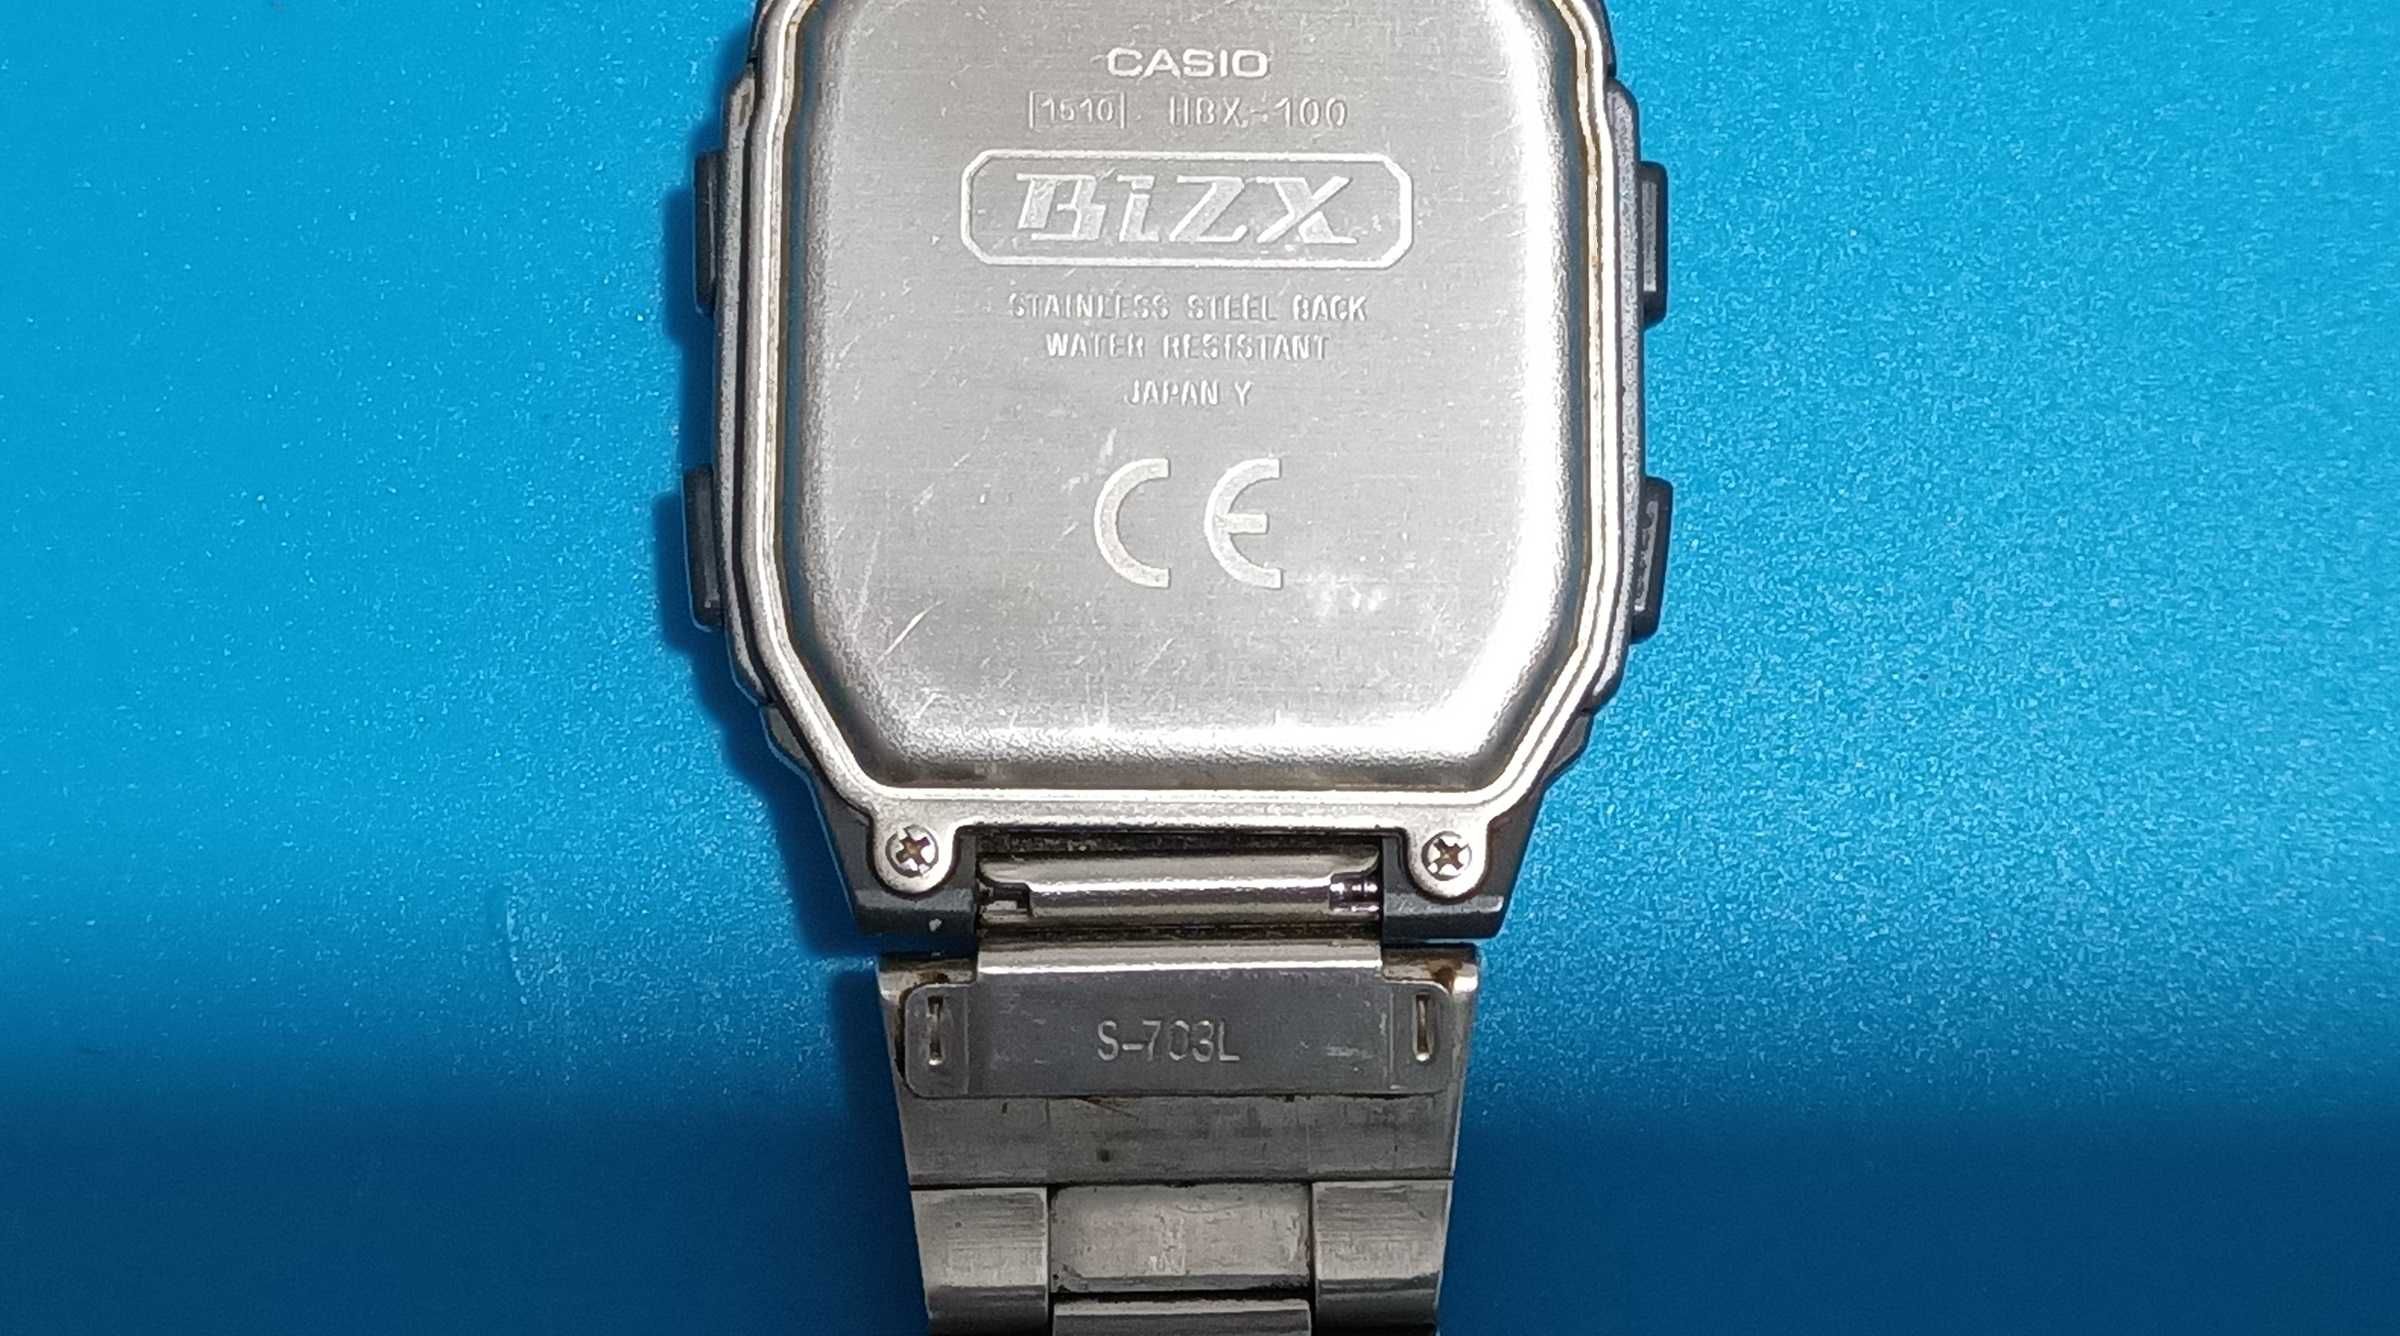 Casio HBX-100, Relogio Vintage 1999 (Raro)